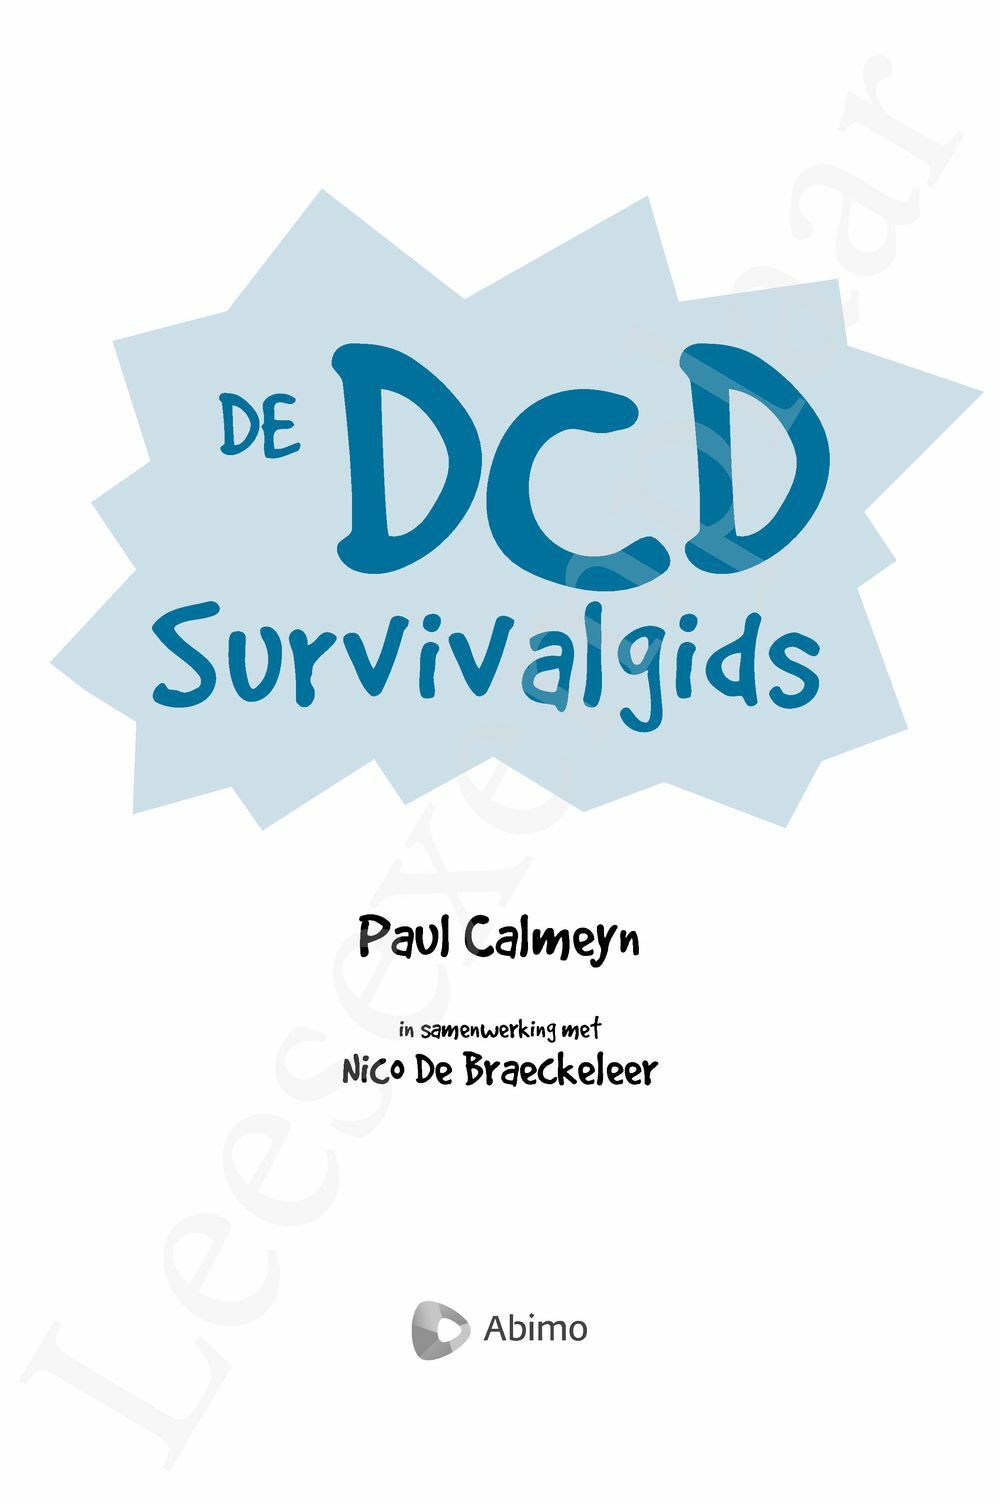 Preview: De DCD survivalgids